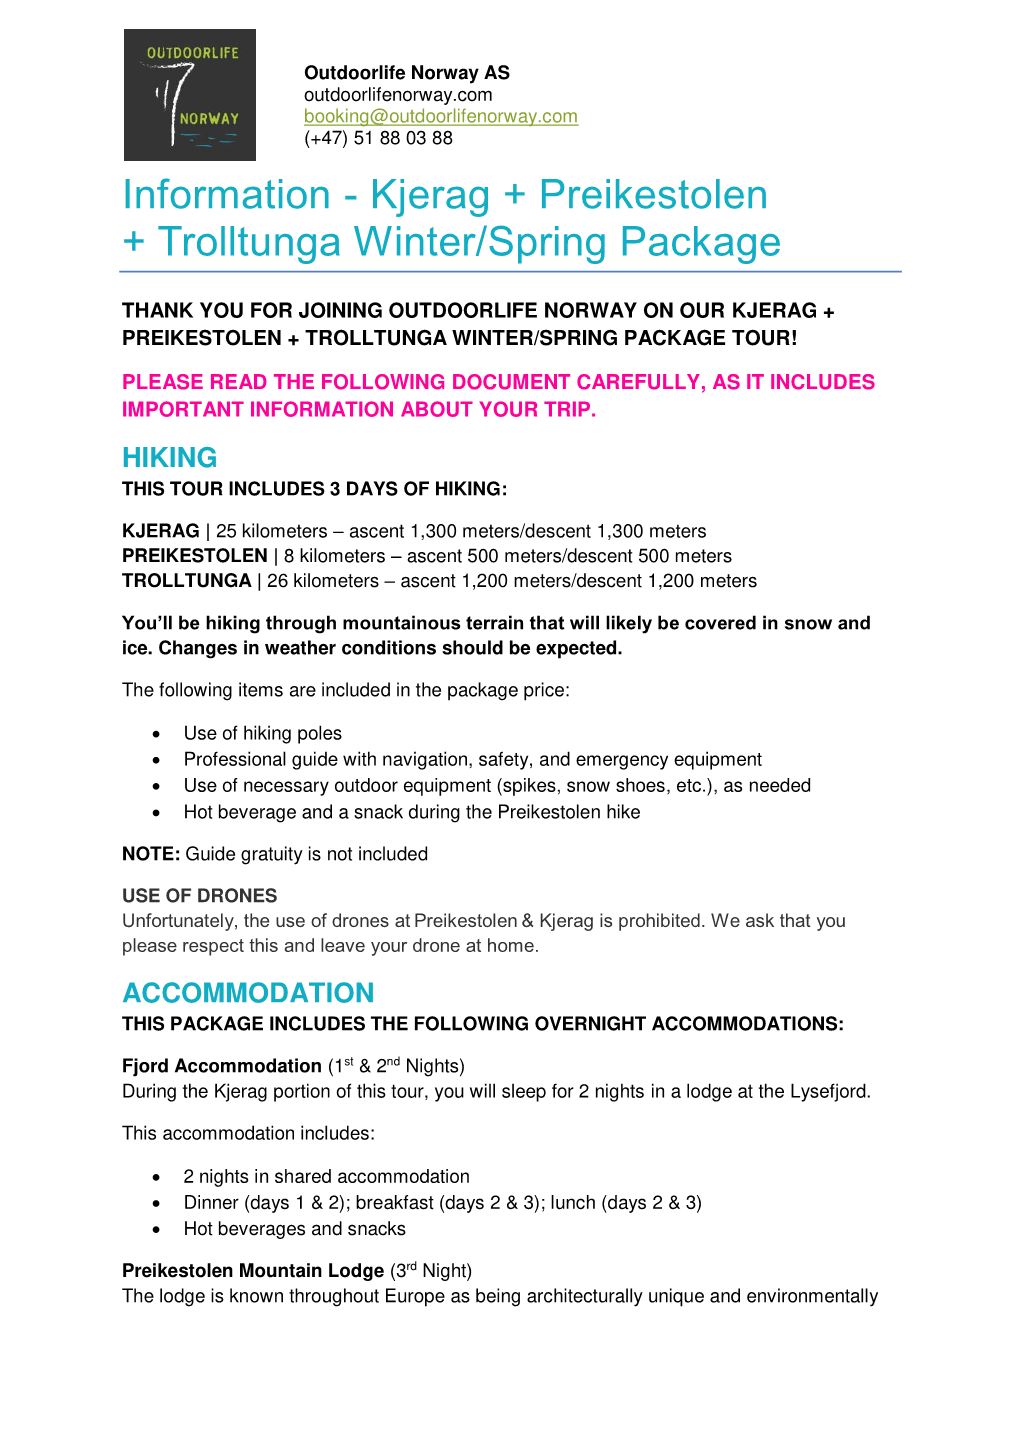 Kjerag + Preikestolen + Trolltunga Winter/Spring Package